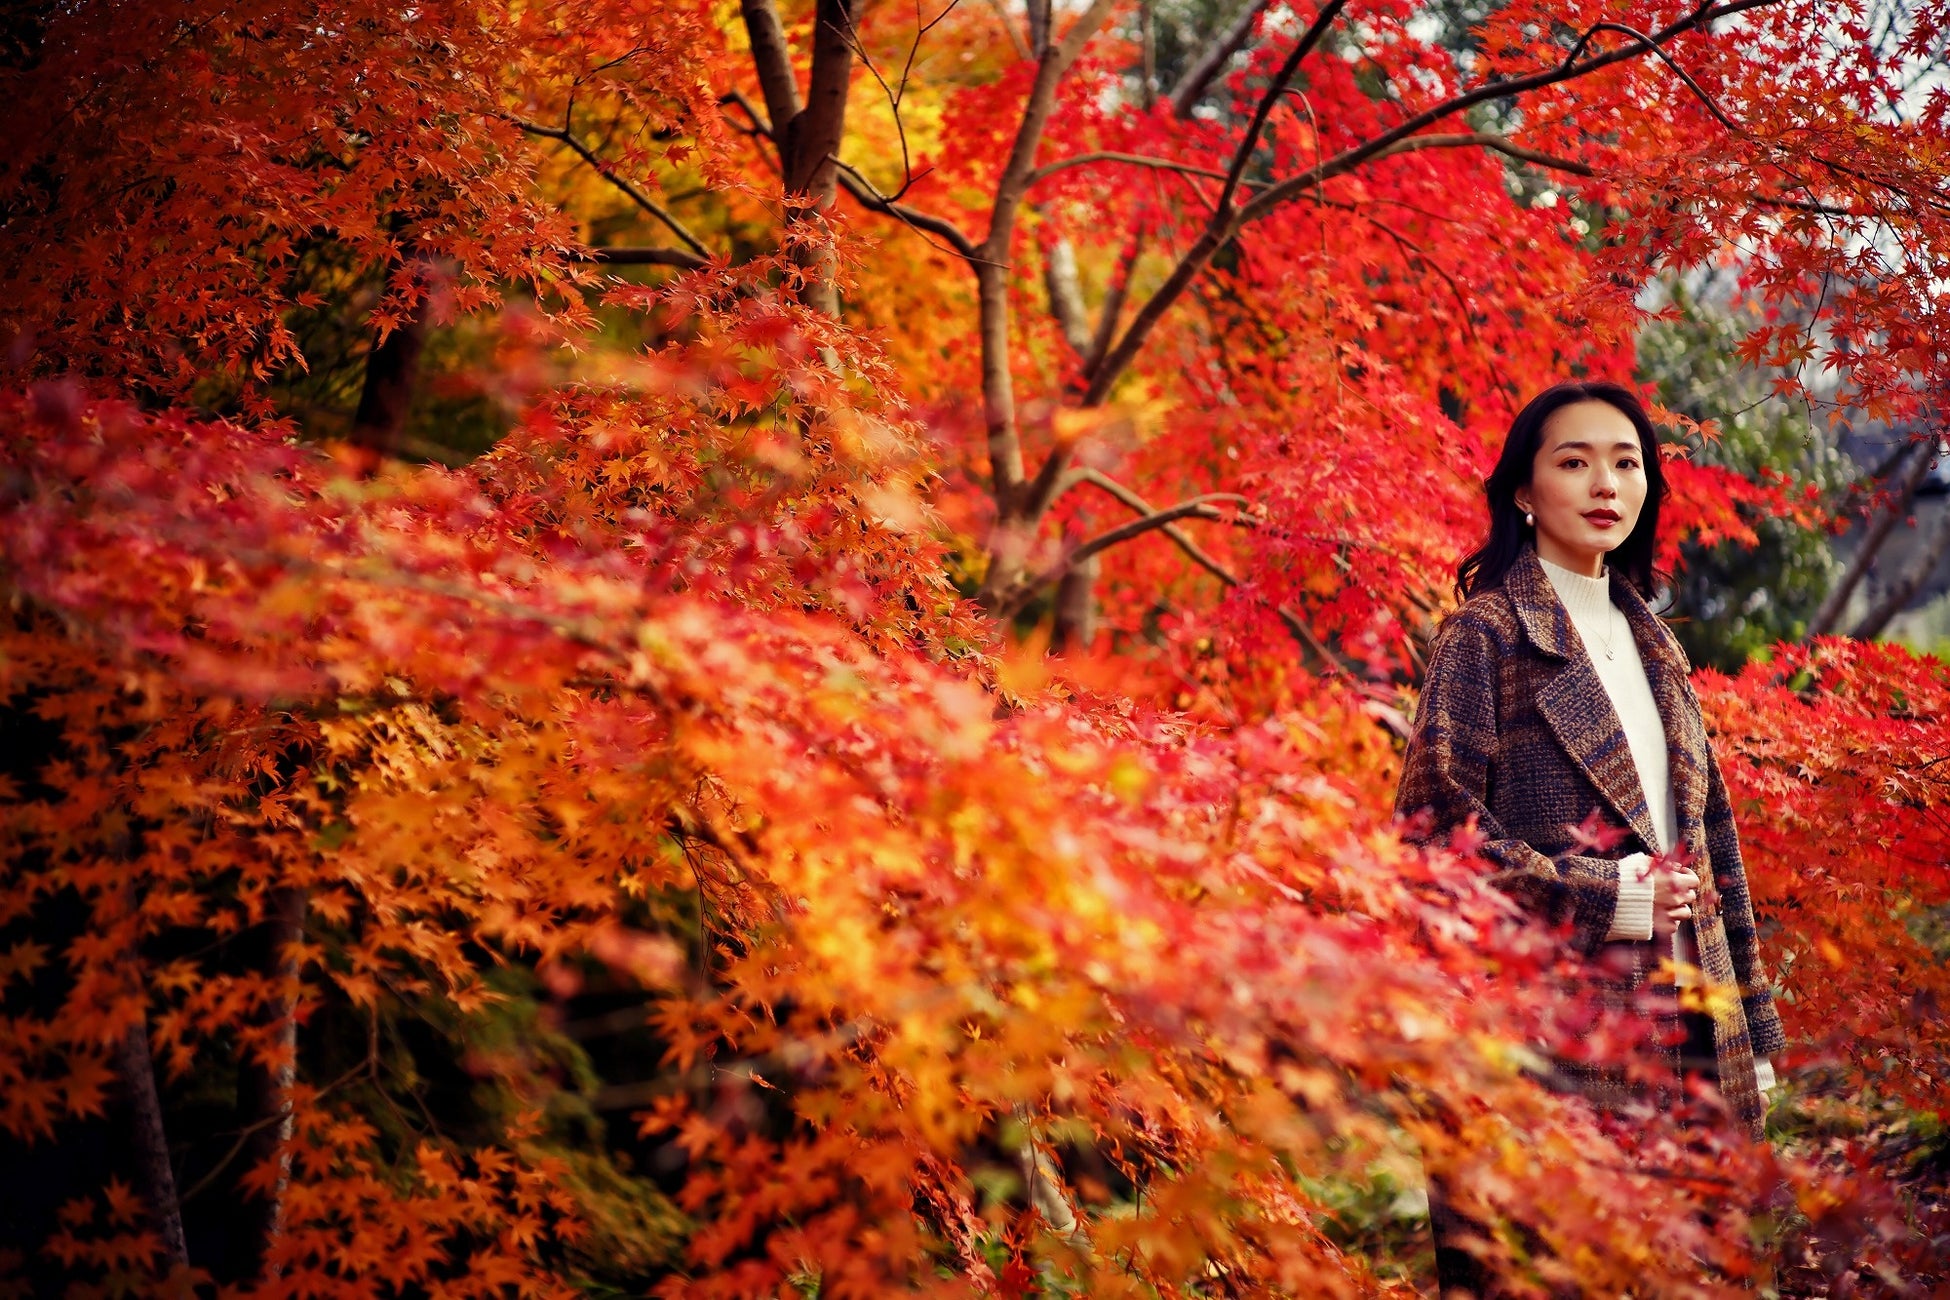 神戸の紅葉の名所「布引の紅葉」間もなく見ごろに。秋色に彩るガーデンと紅葉が調和した自然の織りなす情景を楽しめます。ロープウェイからは色づく六甲山脈の壮大な景色が眼下に広がります。